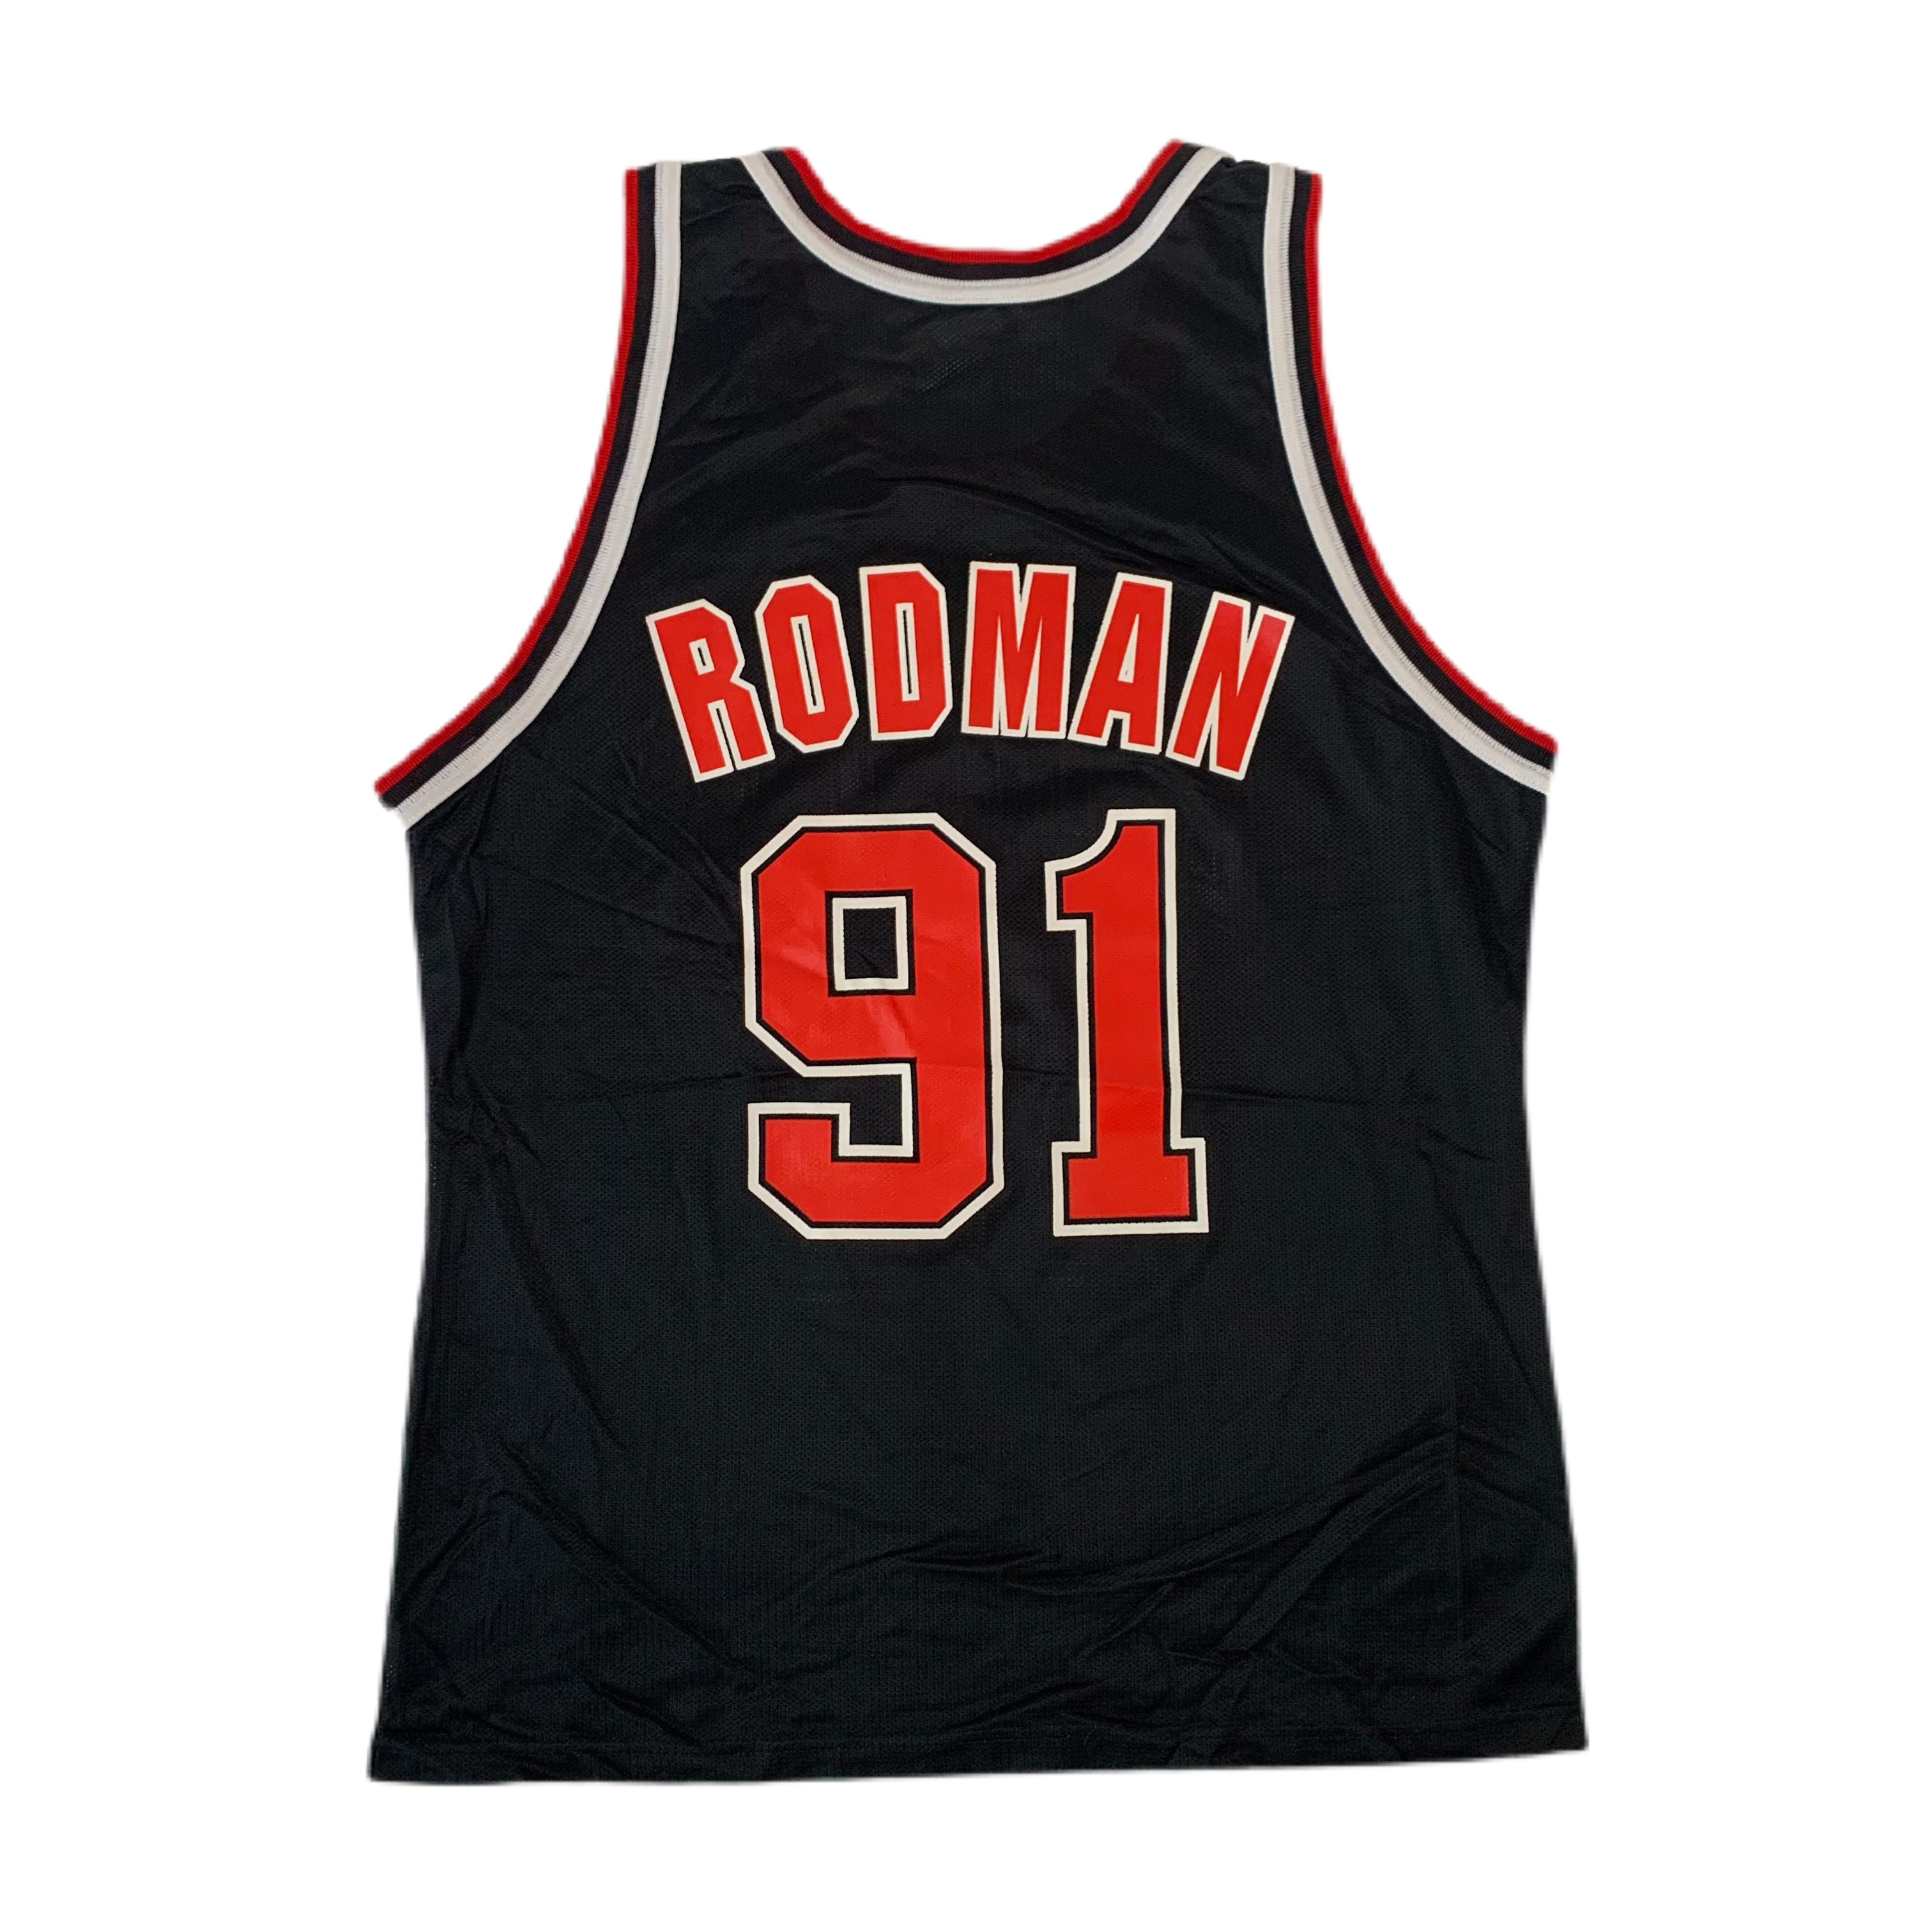 Vintage Chicago Bulls Dennis Rodman 91 Jersey Champion Size 